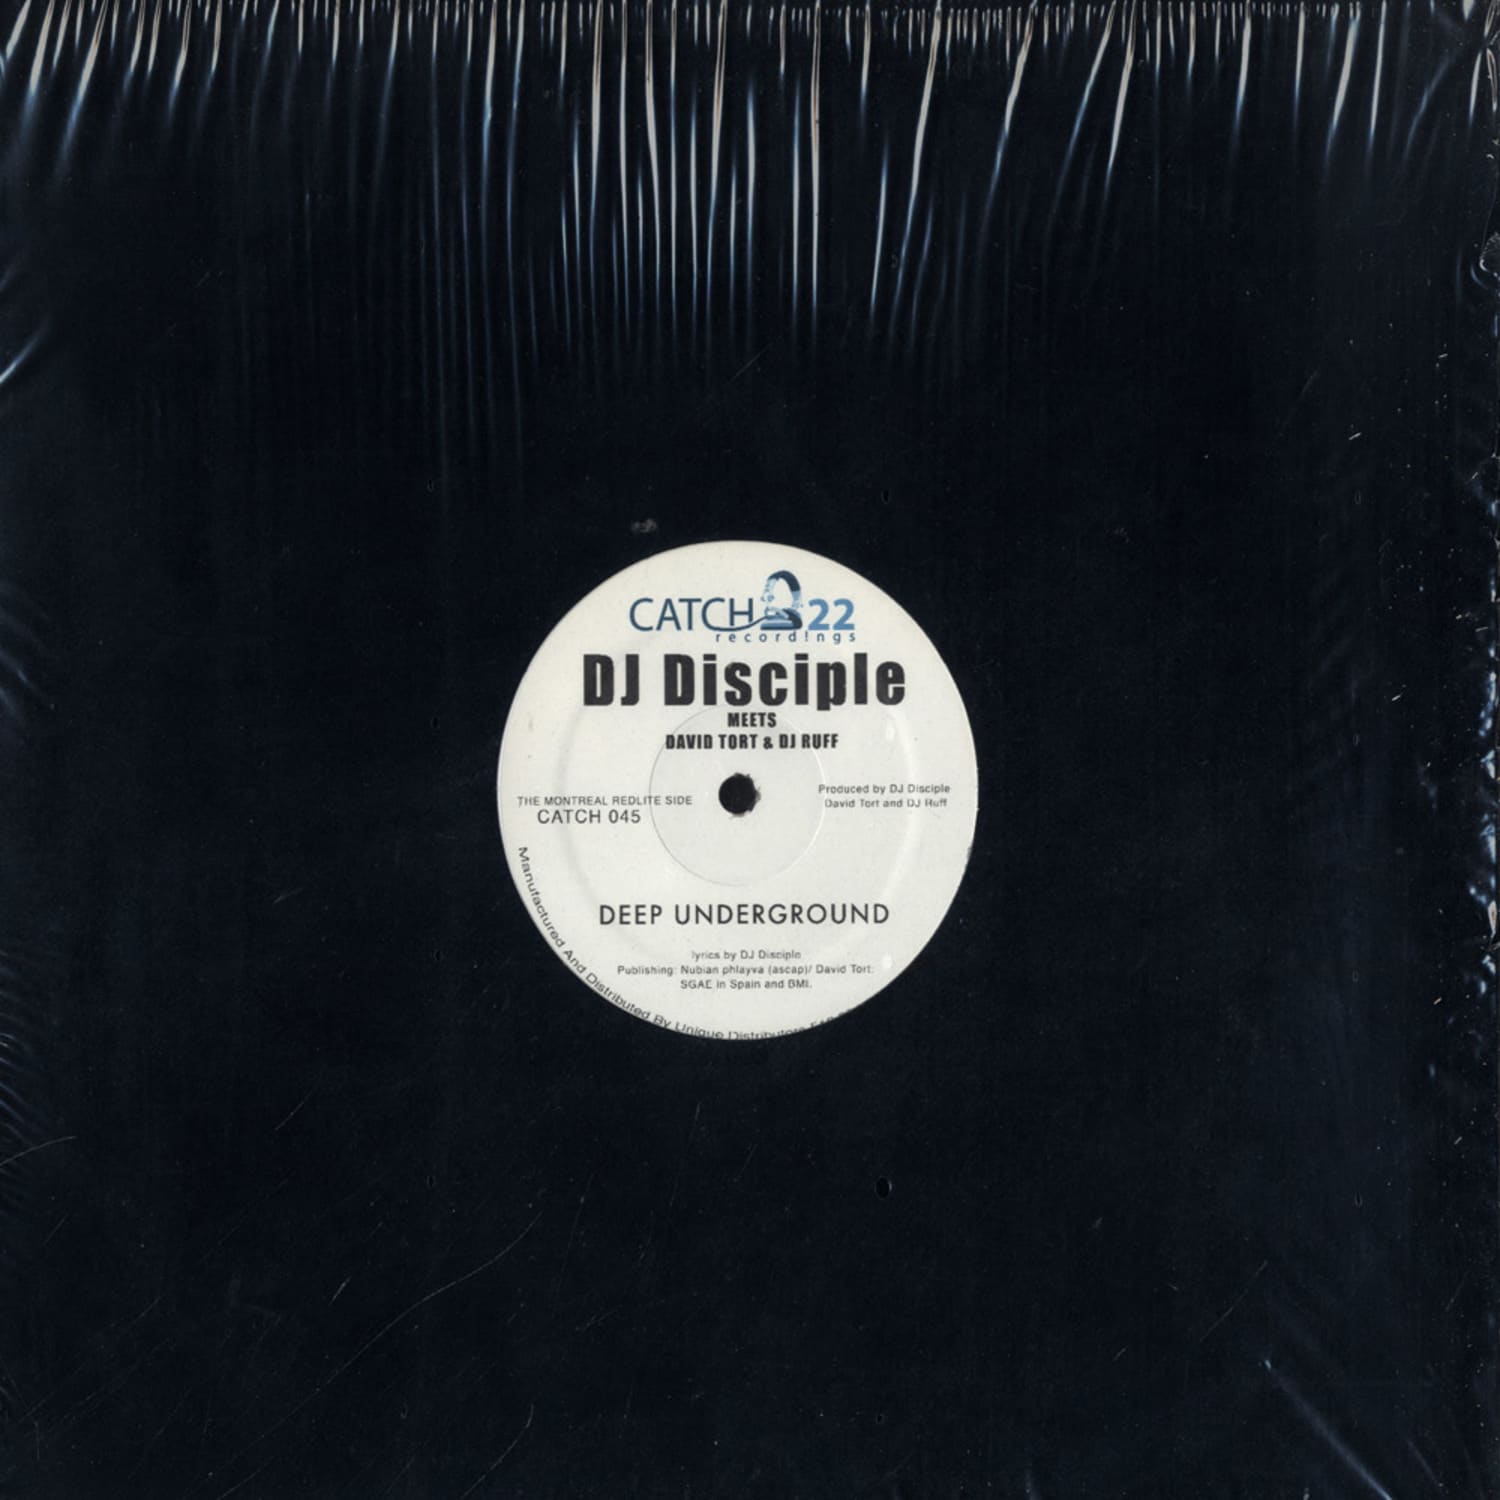 DJ Disciple Meets David Tort - TRANSATLANTIC EP